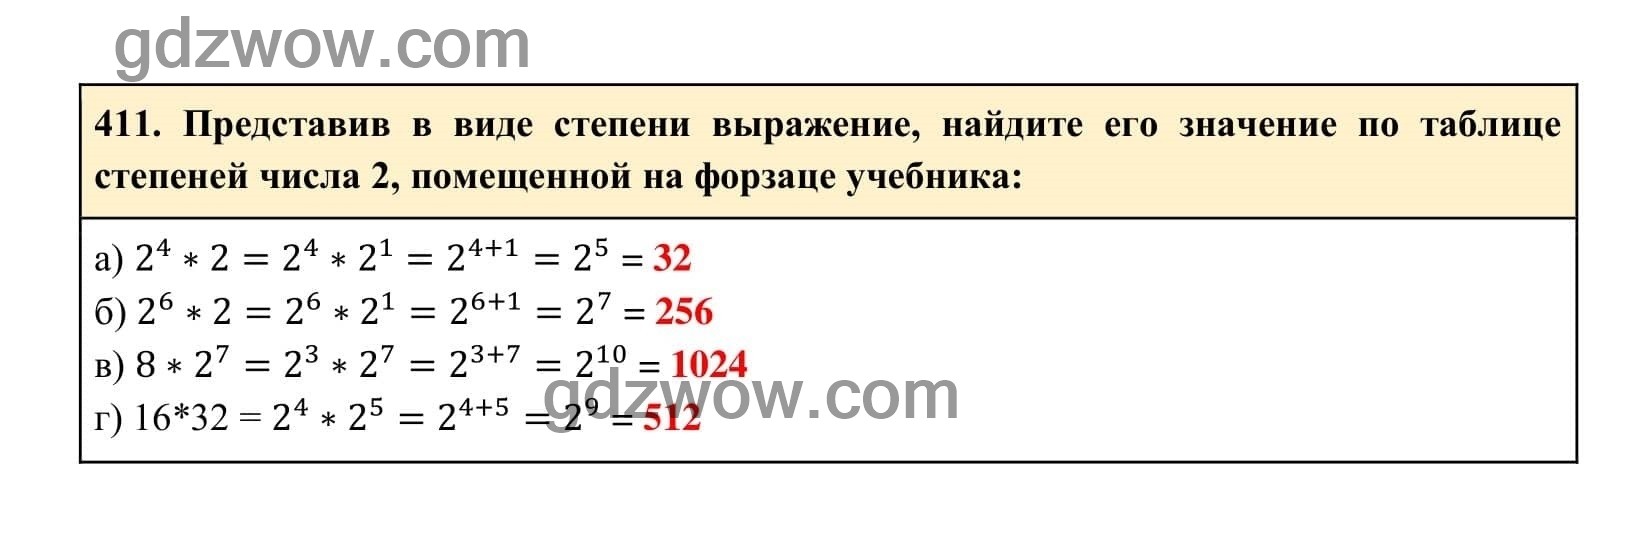 Упражнение 411 - ГДЗ по Алгебре 7 класс Учебник Макарычев (решебник) - GDZwow